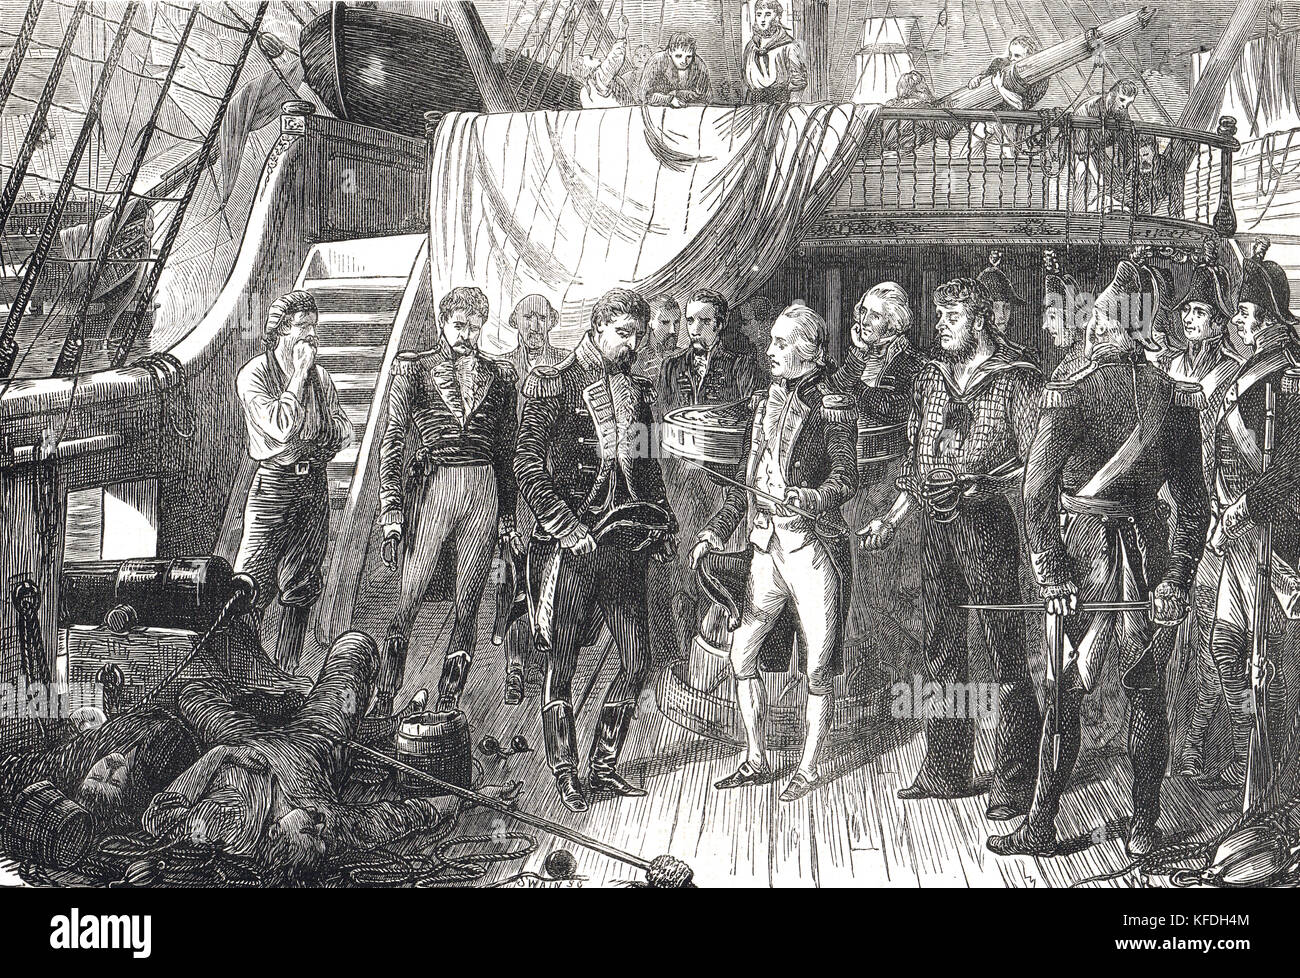 Horatio Nelson, acceptant la cession, de recevoir l'épée de la capitaine espagnol de la San Josef, Bataille du cap St Vincent, 1797 Banque D'Images